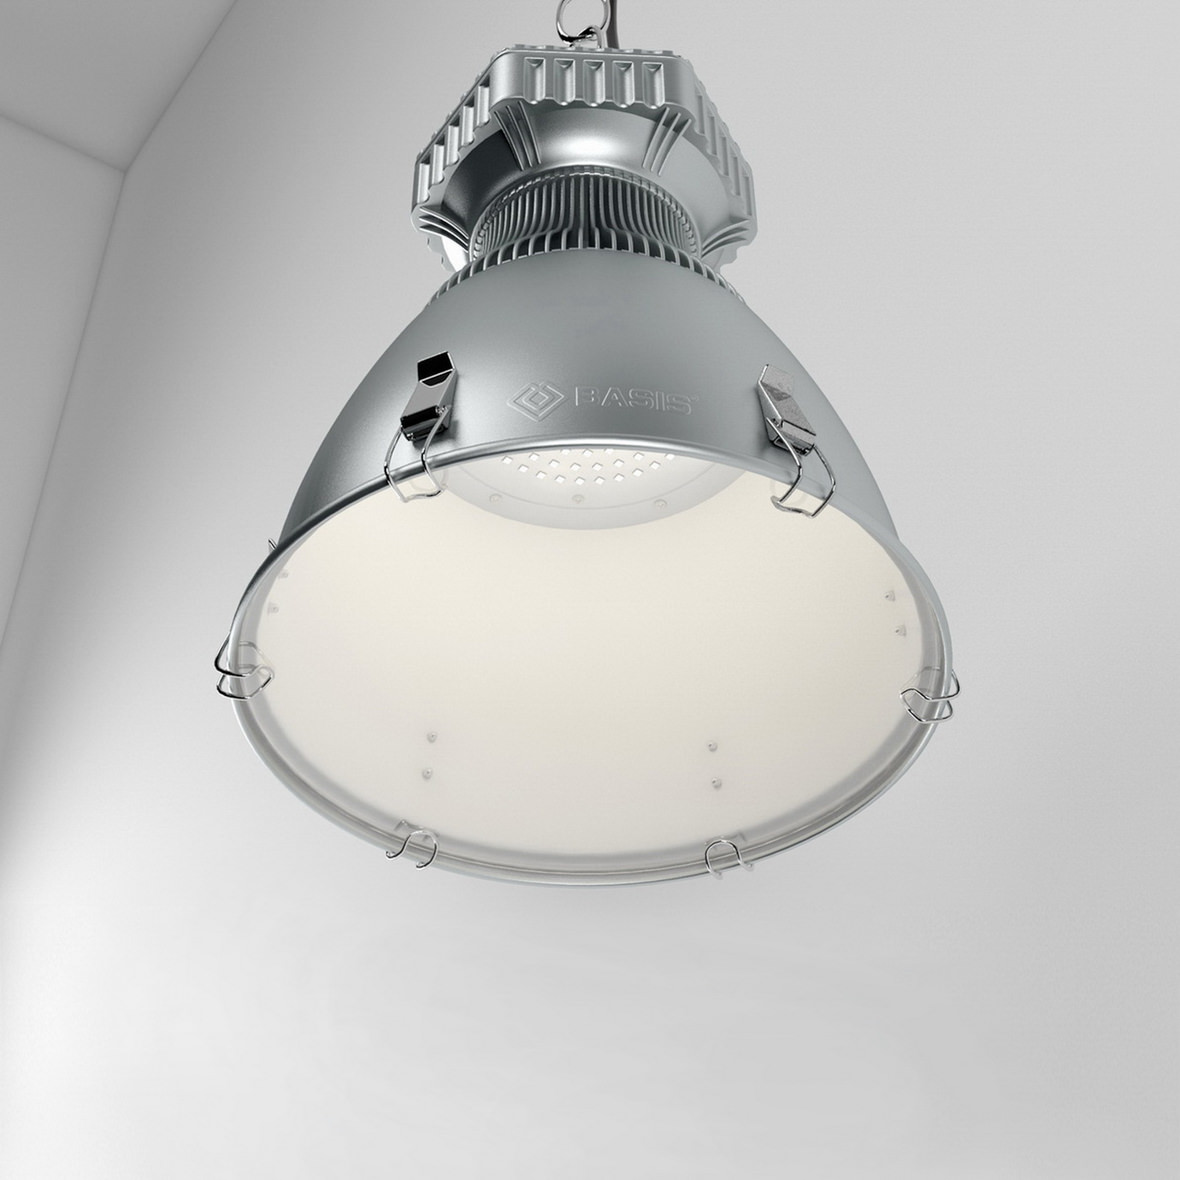 Visualisation de grande qualité en contre-plongée d’un luminaire suspendu industriel dans un boîtier métallique